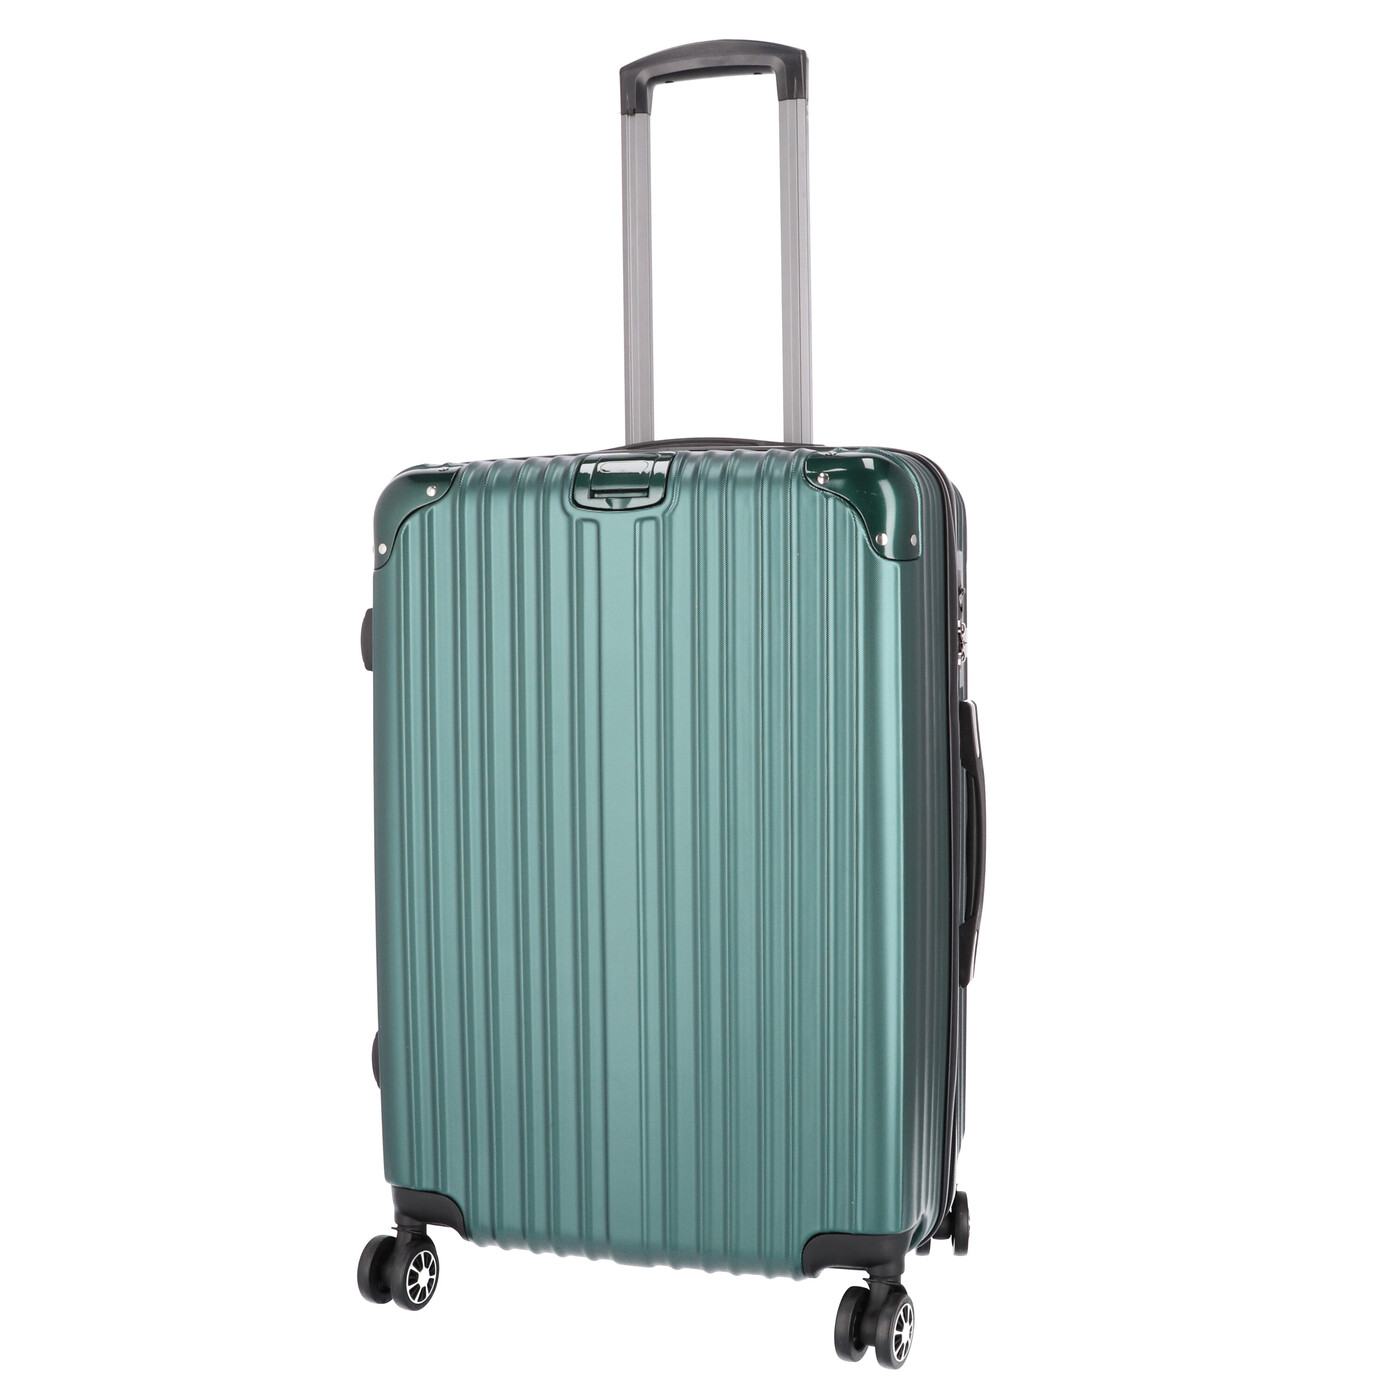 新品 VELO 三段階サイズ可変式 スーツケース